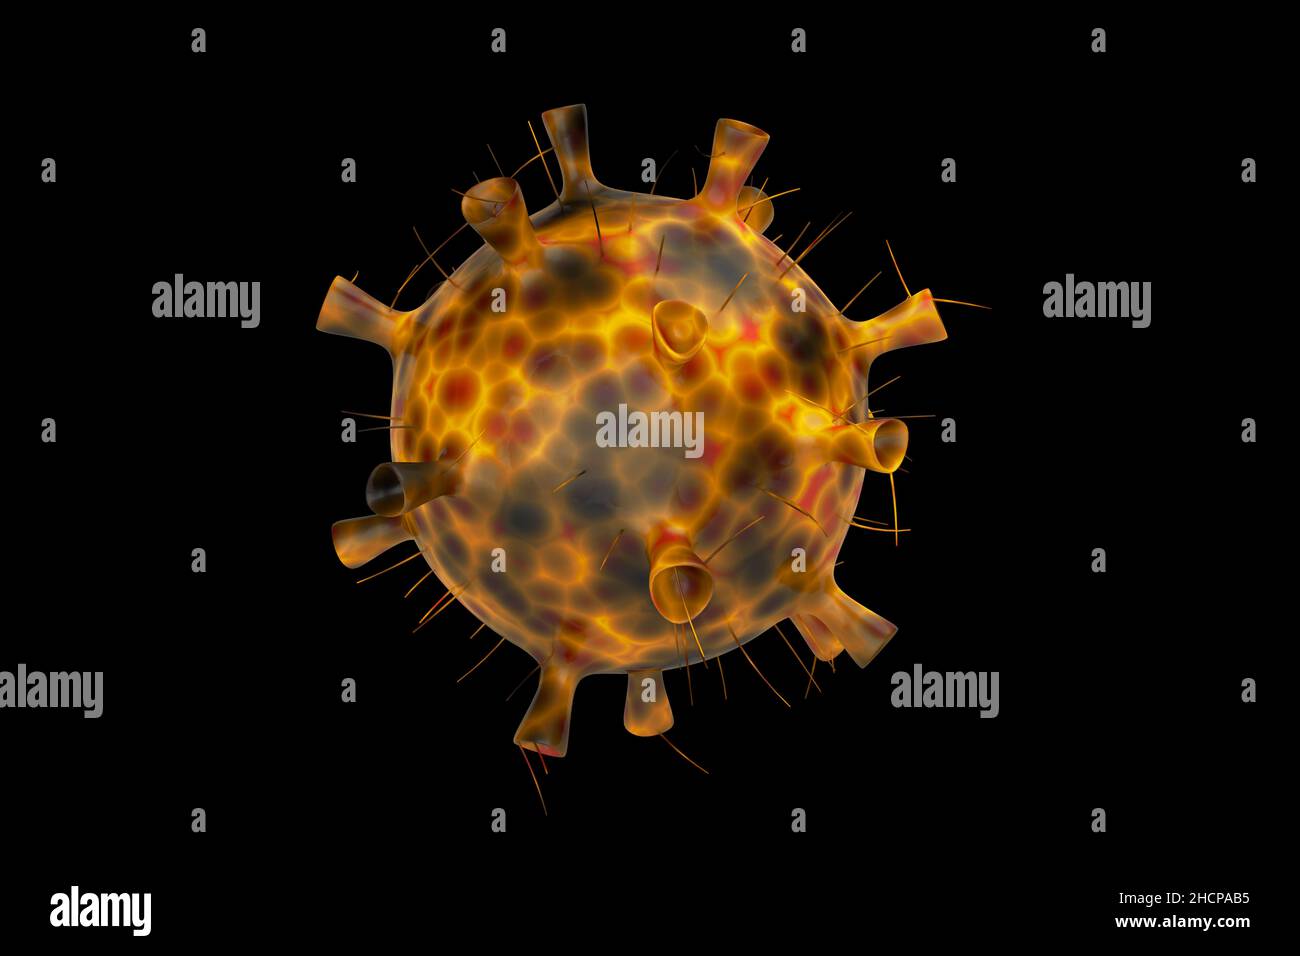 Omicron variante di coronavirus digitalizzazione generata su sfondo nero.la variante B.1.1.529 è stata riportata per la prima volta all'OMS dal Sudafrica il 24 novembre. Foto Stock